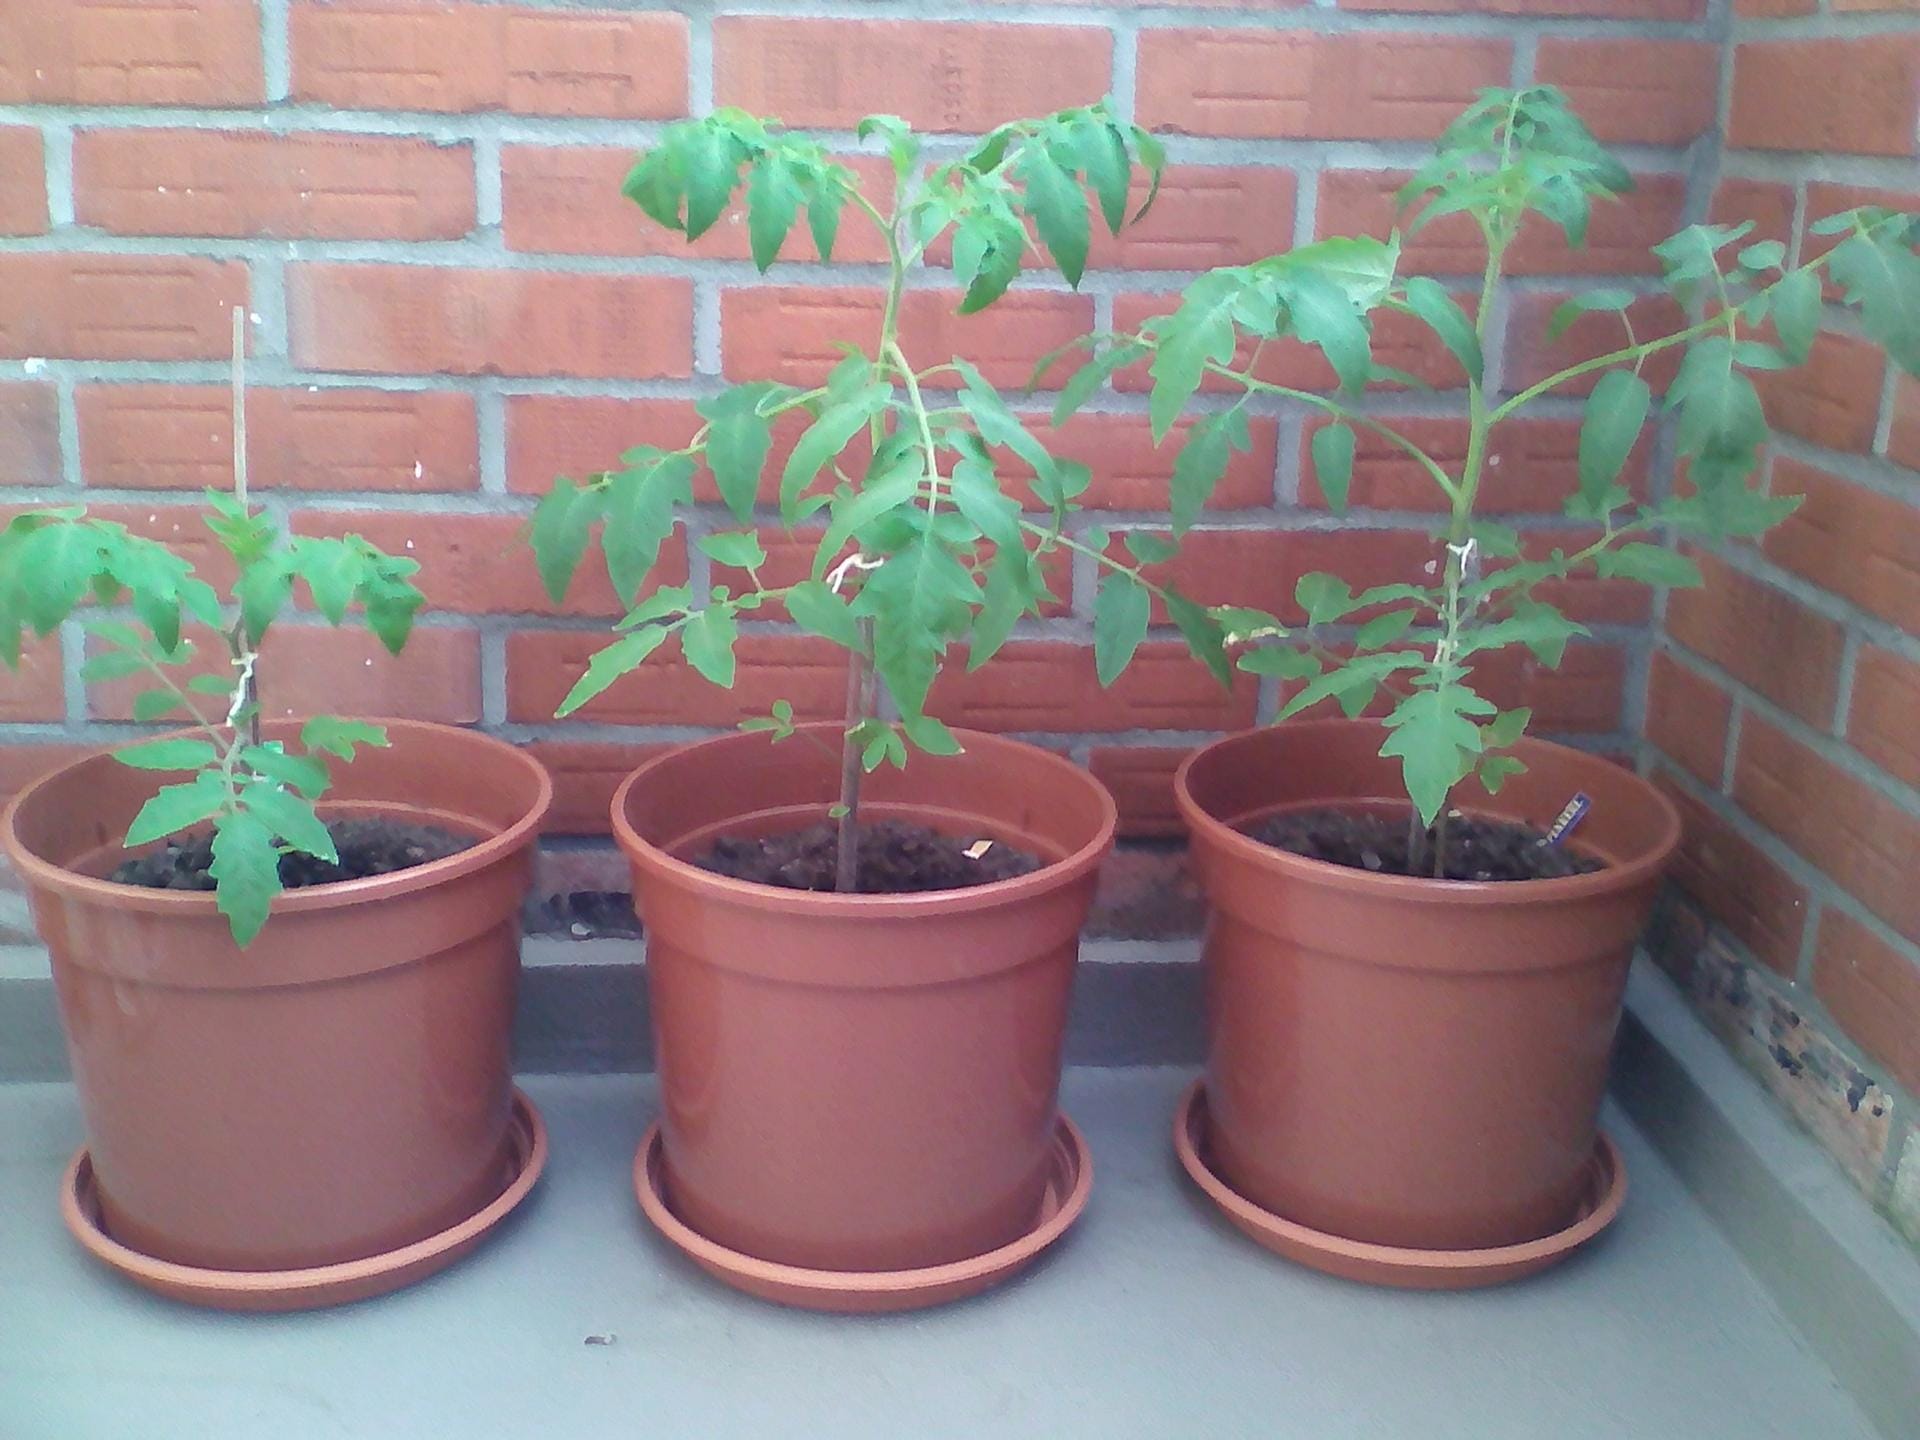 Tomaten in Kübeln: Lidl Tomate (links), Sperli Bio-Tomate (mittig) und Kiepenkerl Tomate (rechts) zweieinhalb Wochen nach dem Auspflanzen.